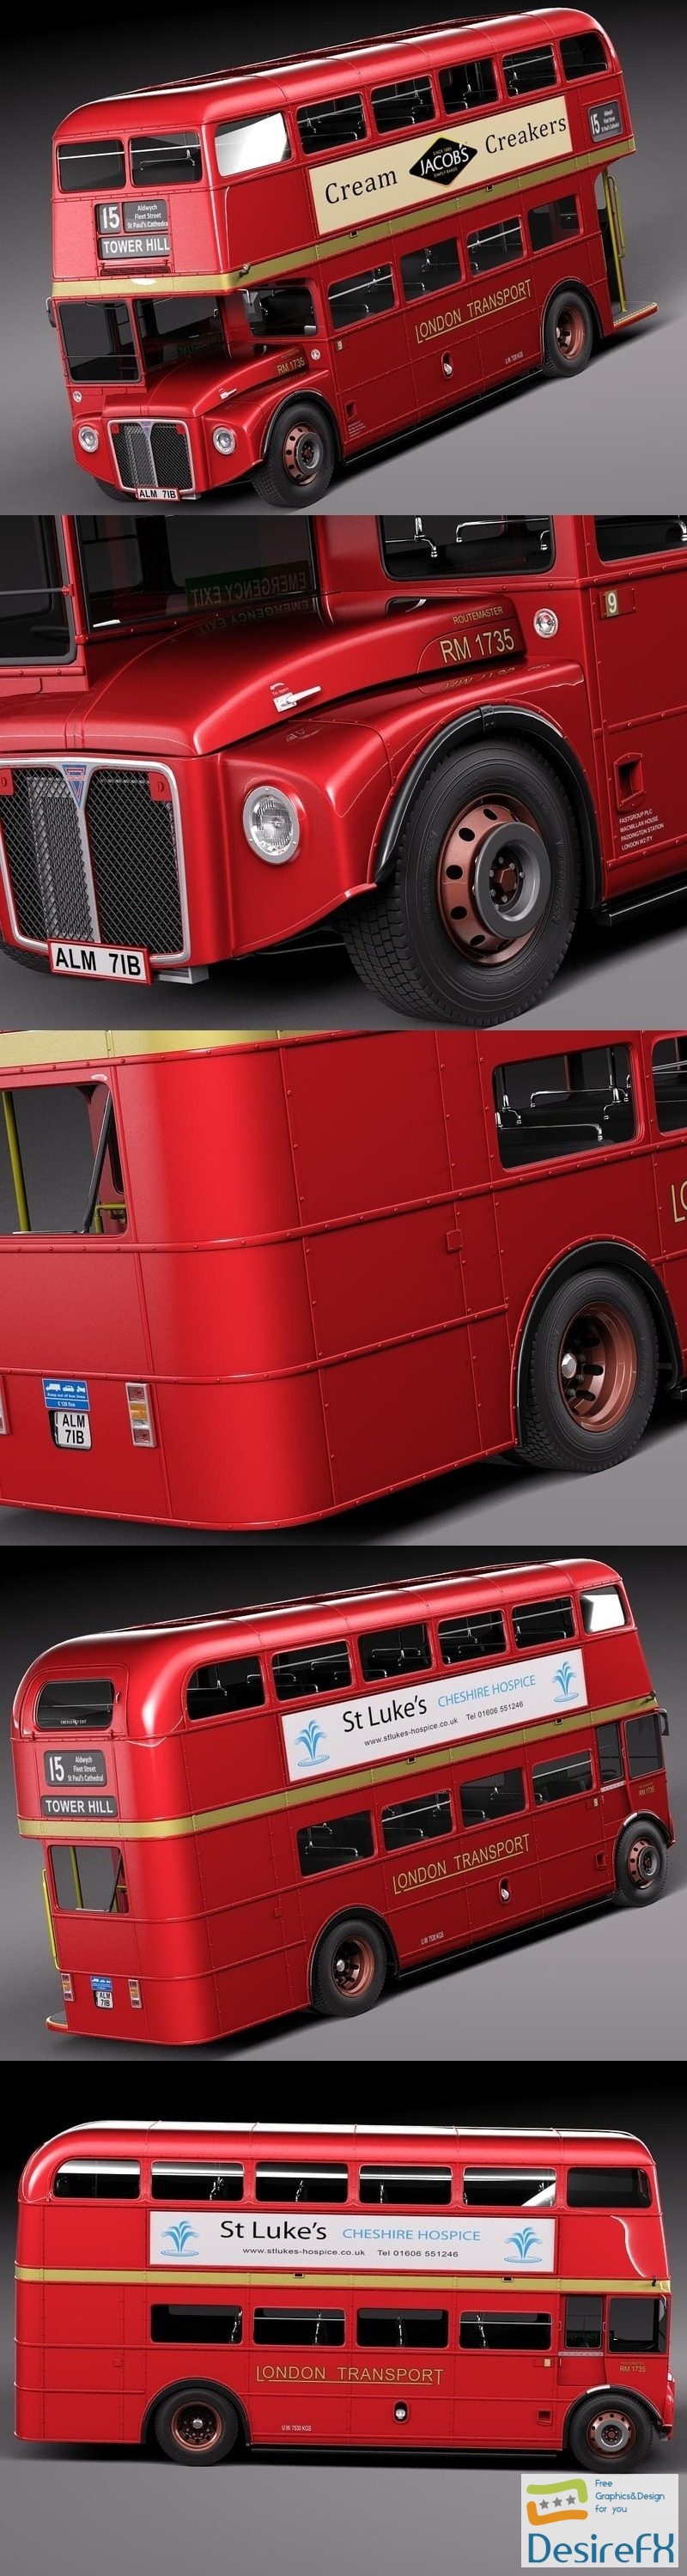 Routemaster London Double Decker Bus 3D Model